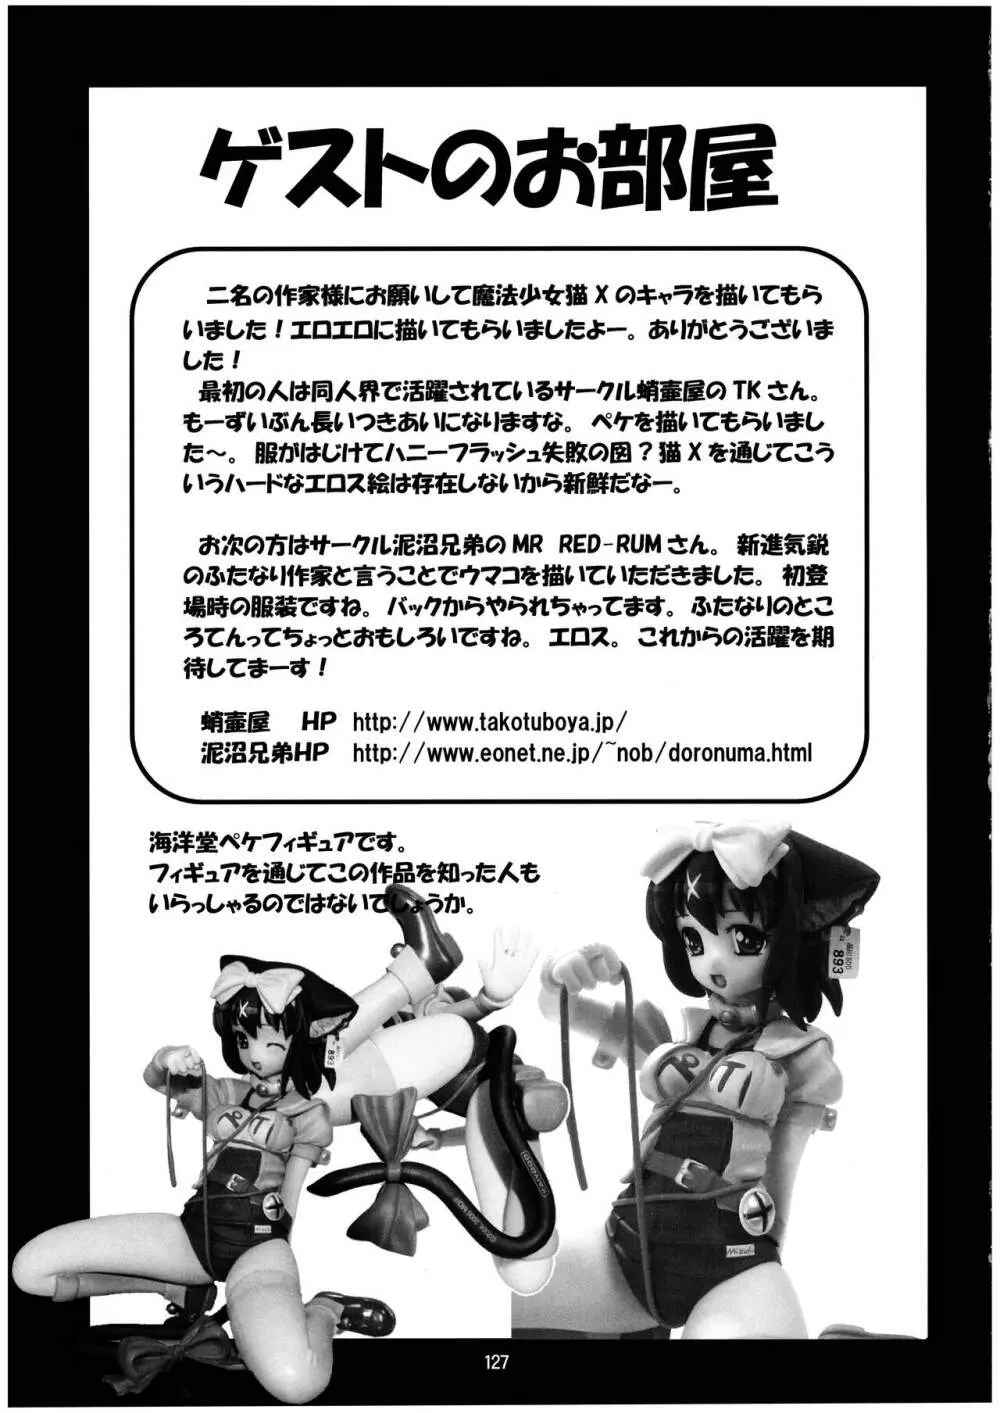 魔法少女猫XXX総集編 - page127